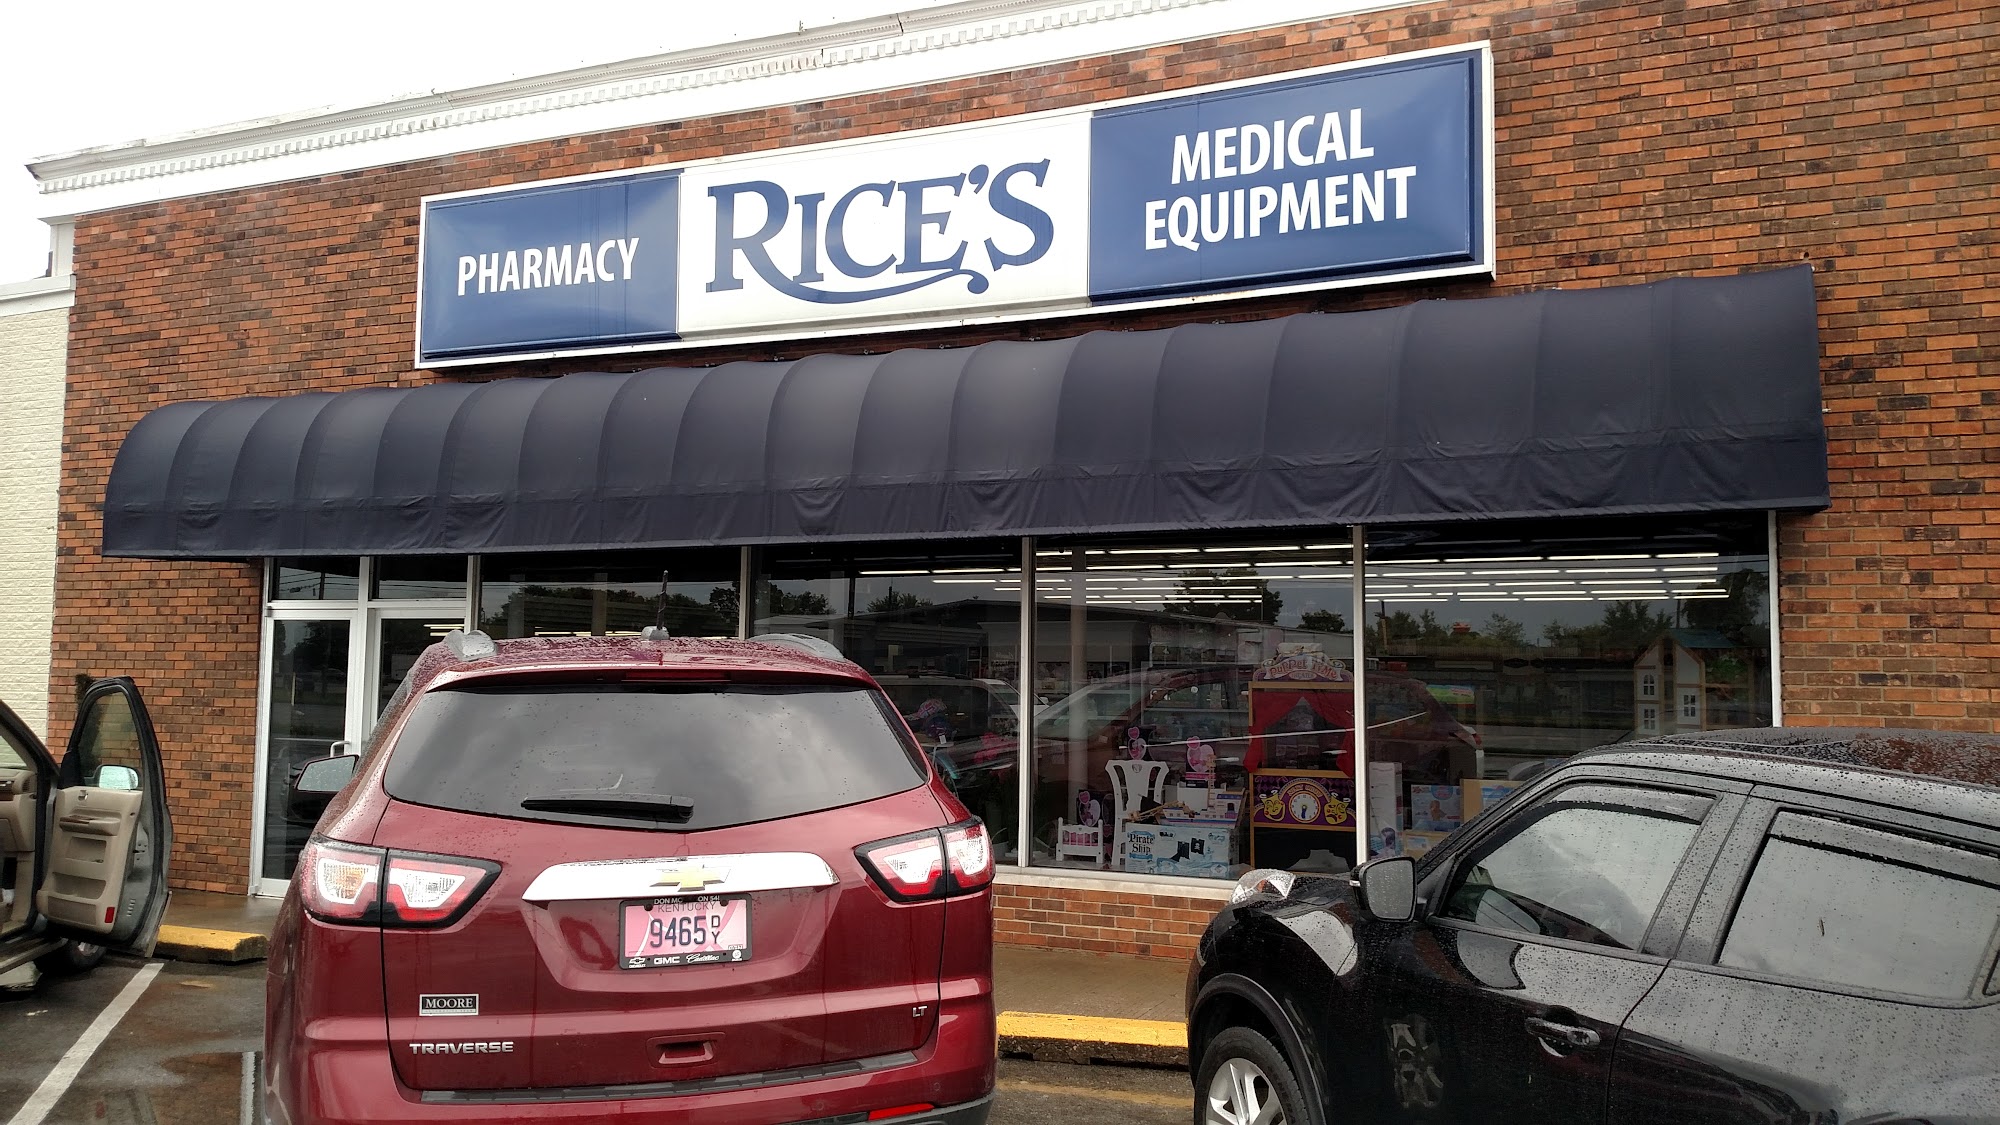 Rice's Pharmacy